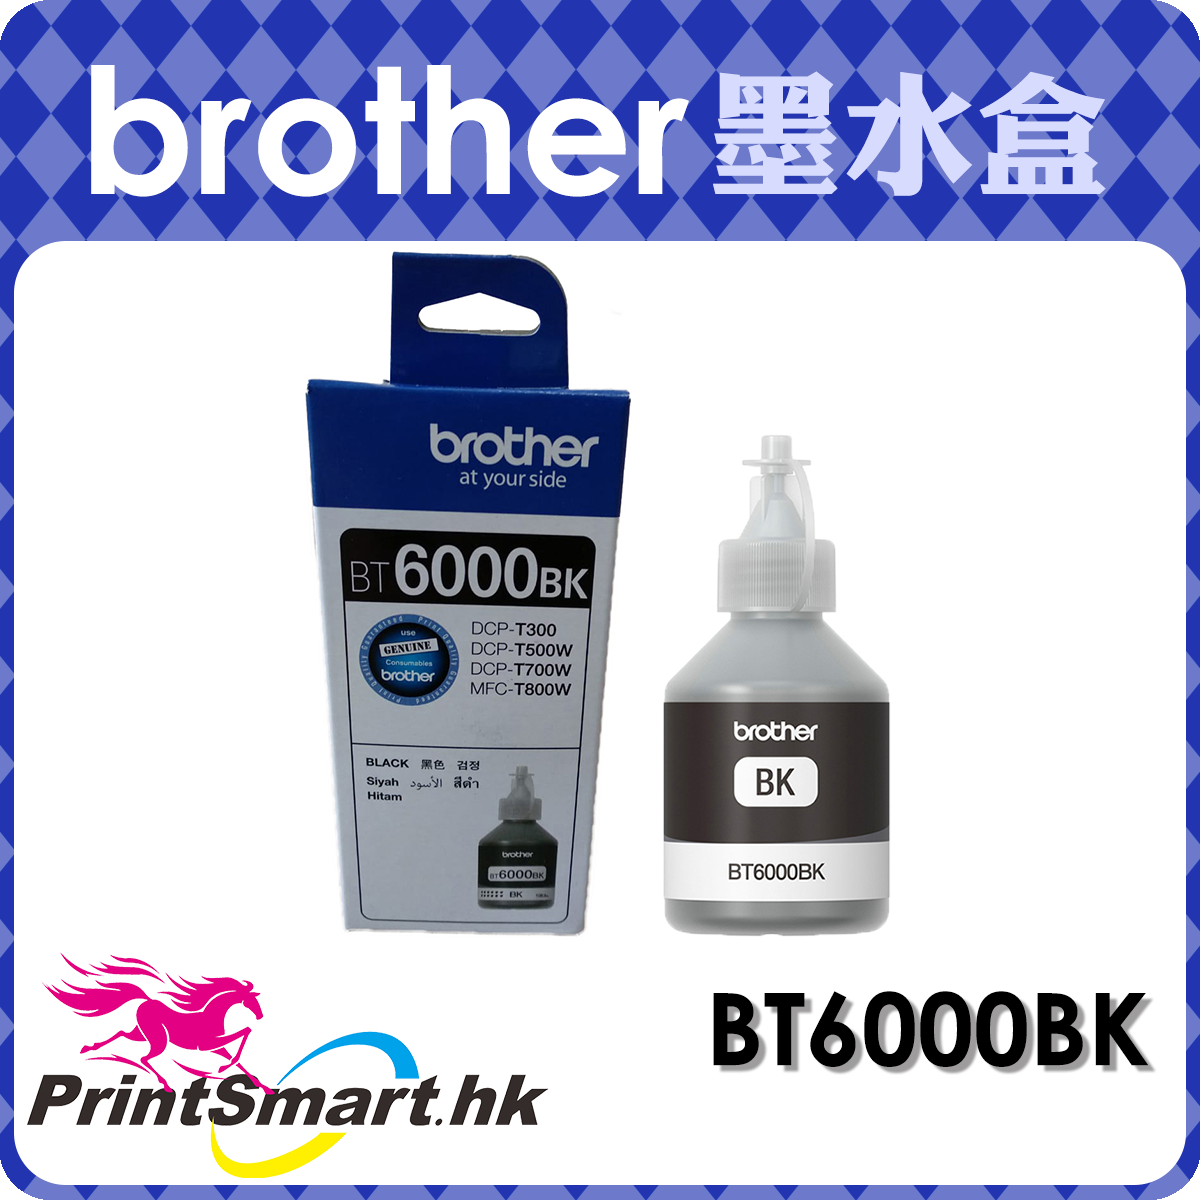 Brother – PrintSmart.hk